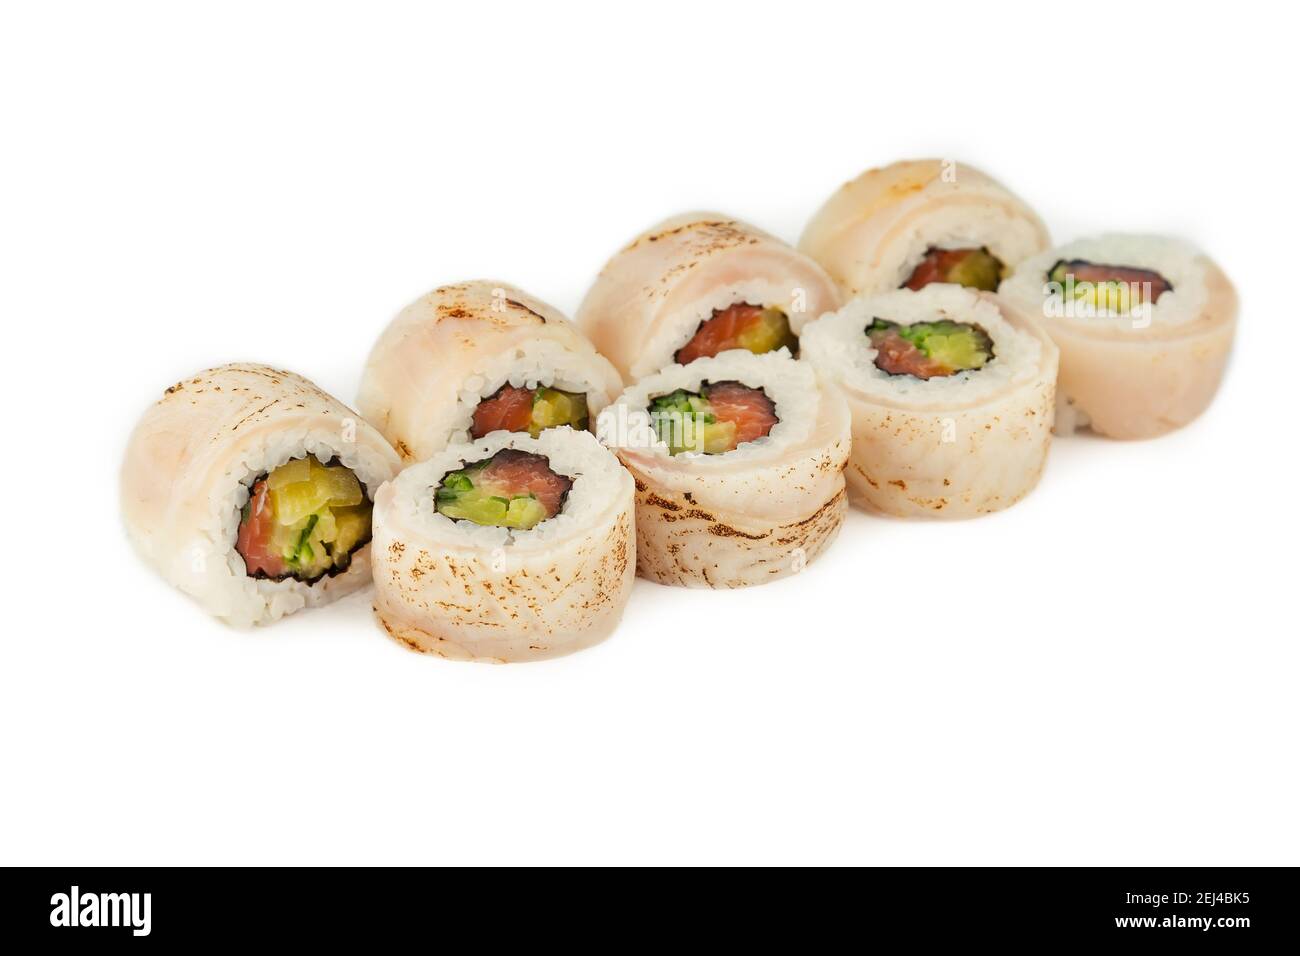 Sushi Roll con tataki di pesce persico e salmone in salsa ponzu su fondo bianco, ingredienti scottati spigola, salmone, cetriolo, takuan, salsa ponzu, riso Foto Stock